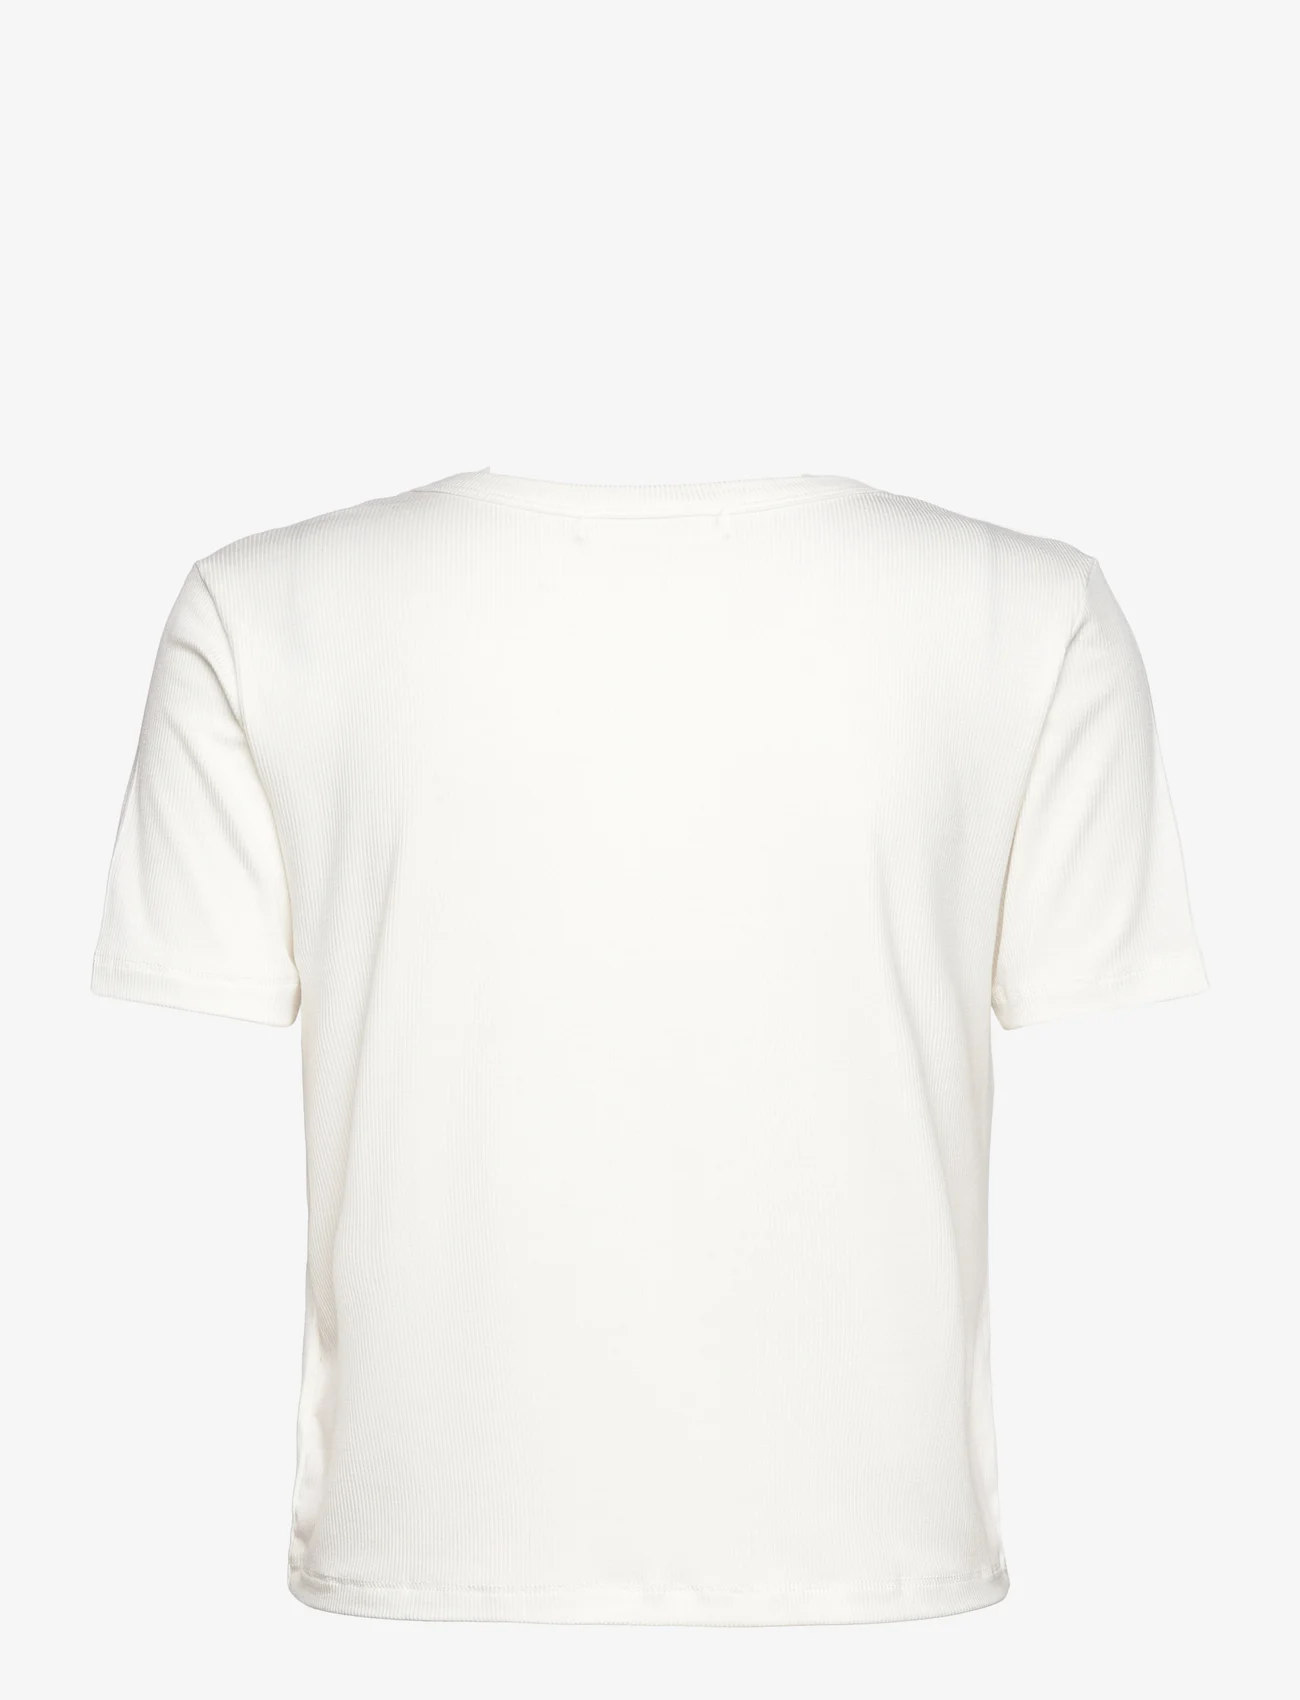 Sofie Schnoor - T-Shirt - laveste priser - white - 1